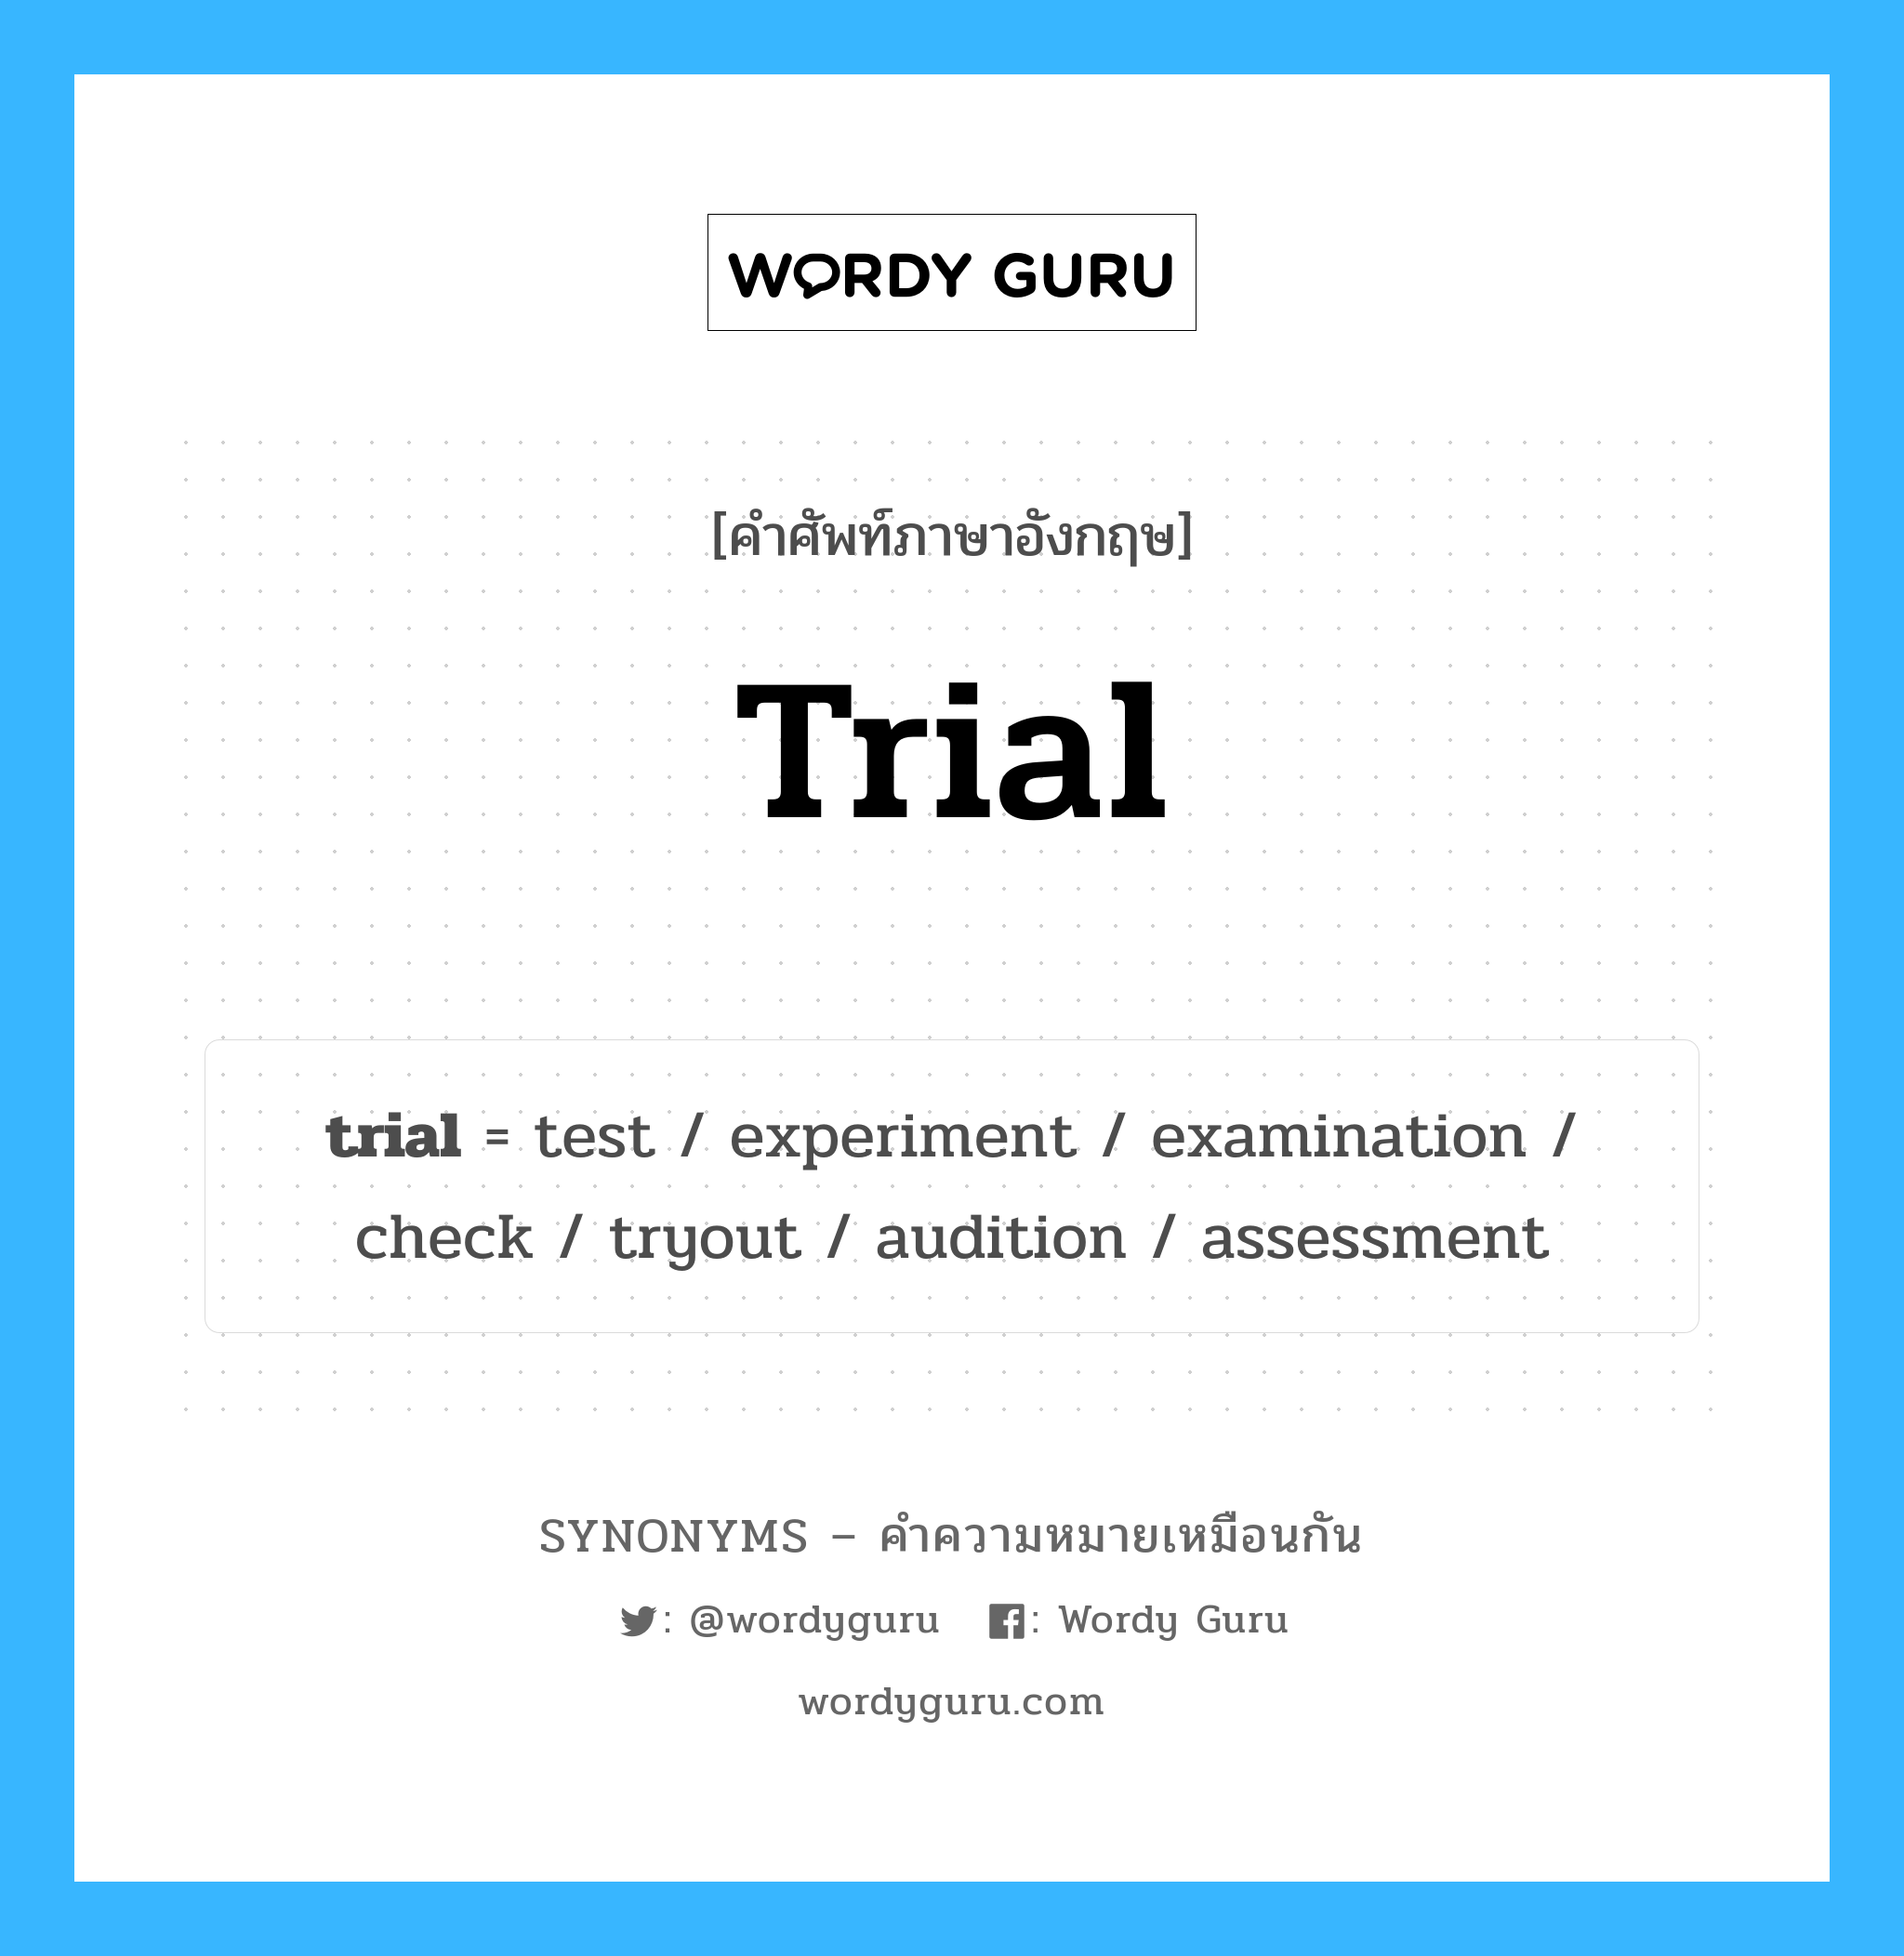 examination เป็นหนึ่งใน trial และมีคำอื่น ๆ อีกดังนี้, คำศัพท์ภาษาอังกฤษ examination ความหมายคล้ายกันกับ trial แปลว่า การตรวจสอบ หมวด trial